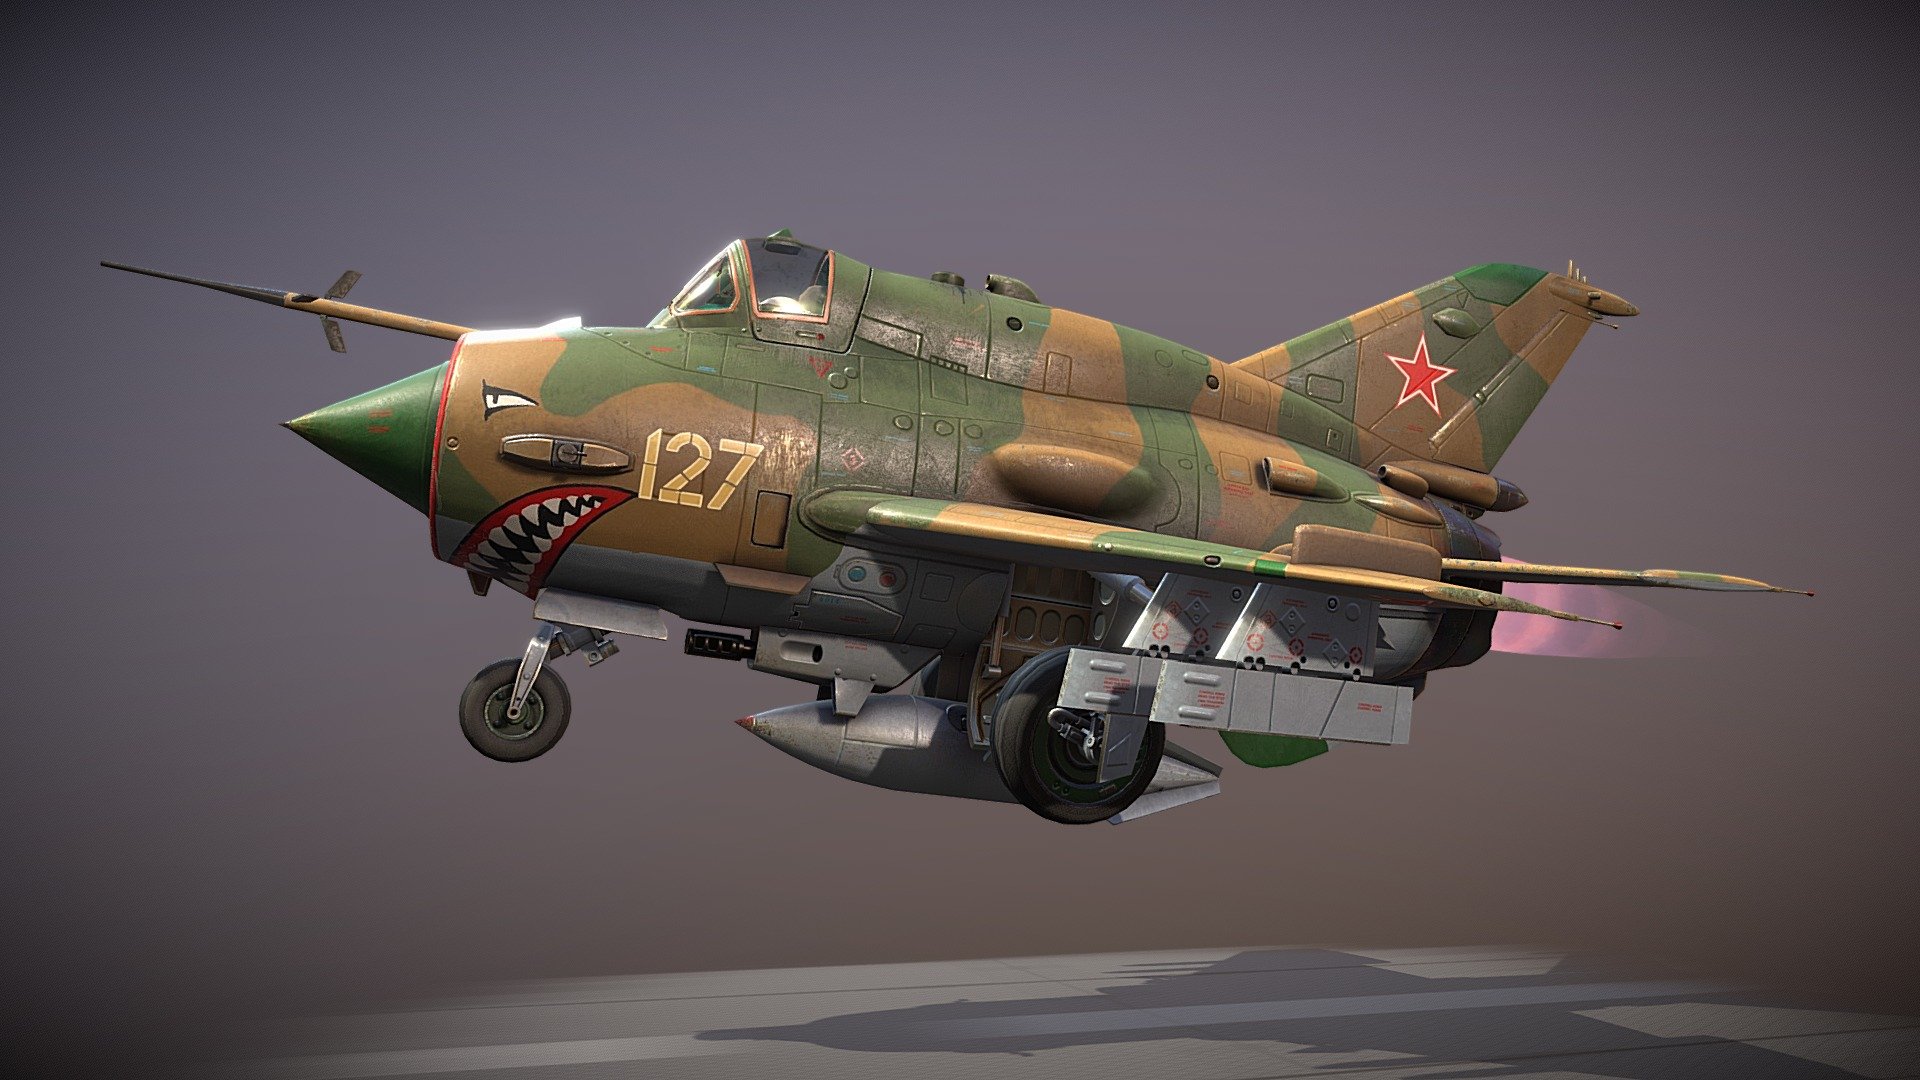 my favorite airplane in flight school&hellip; 1991&hellip;) - MiG-21 Chibi - 3D model by Oleh (@oleg.sytnikov) 3d model